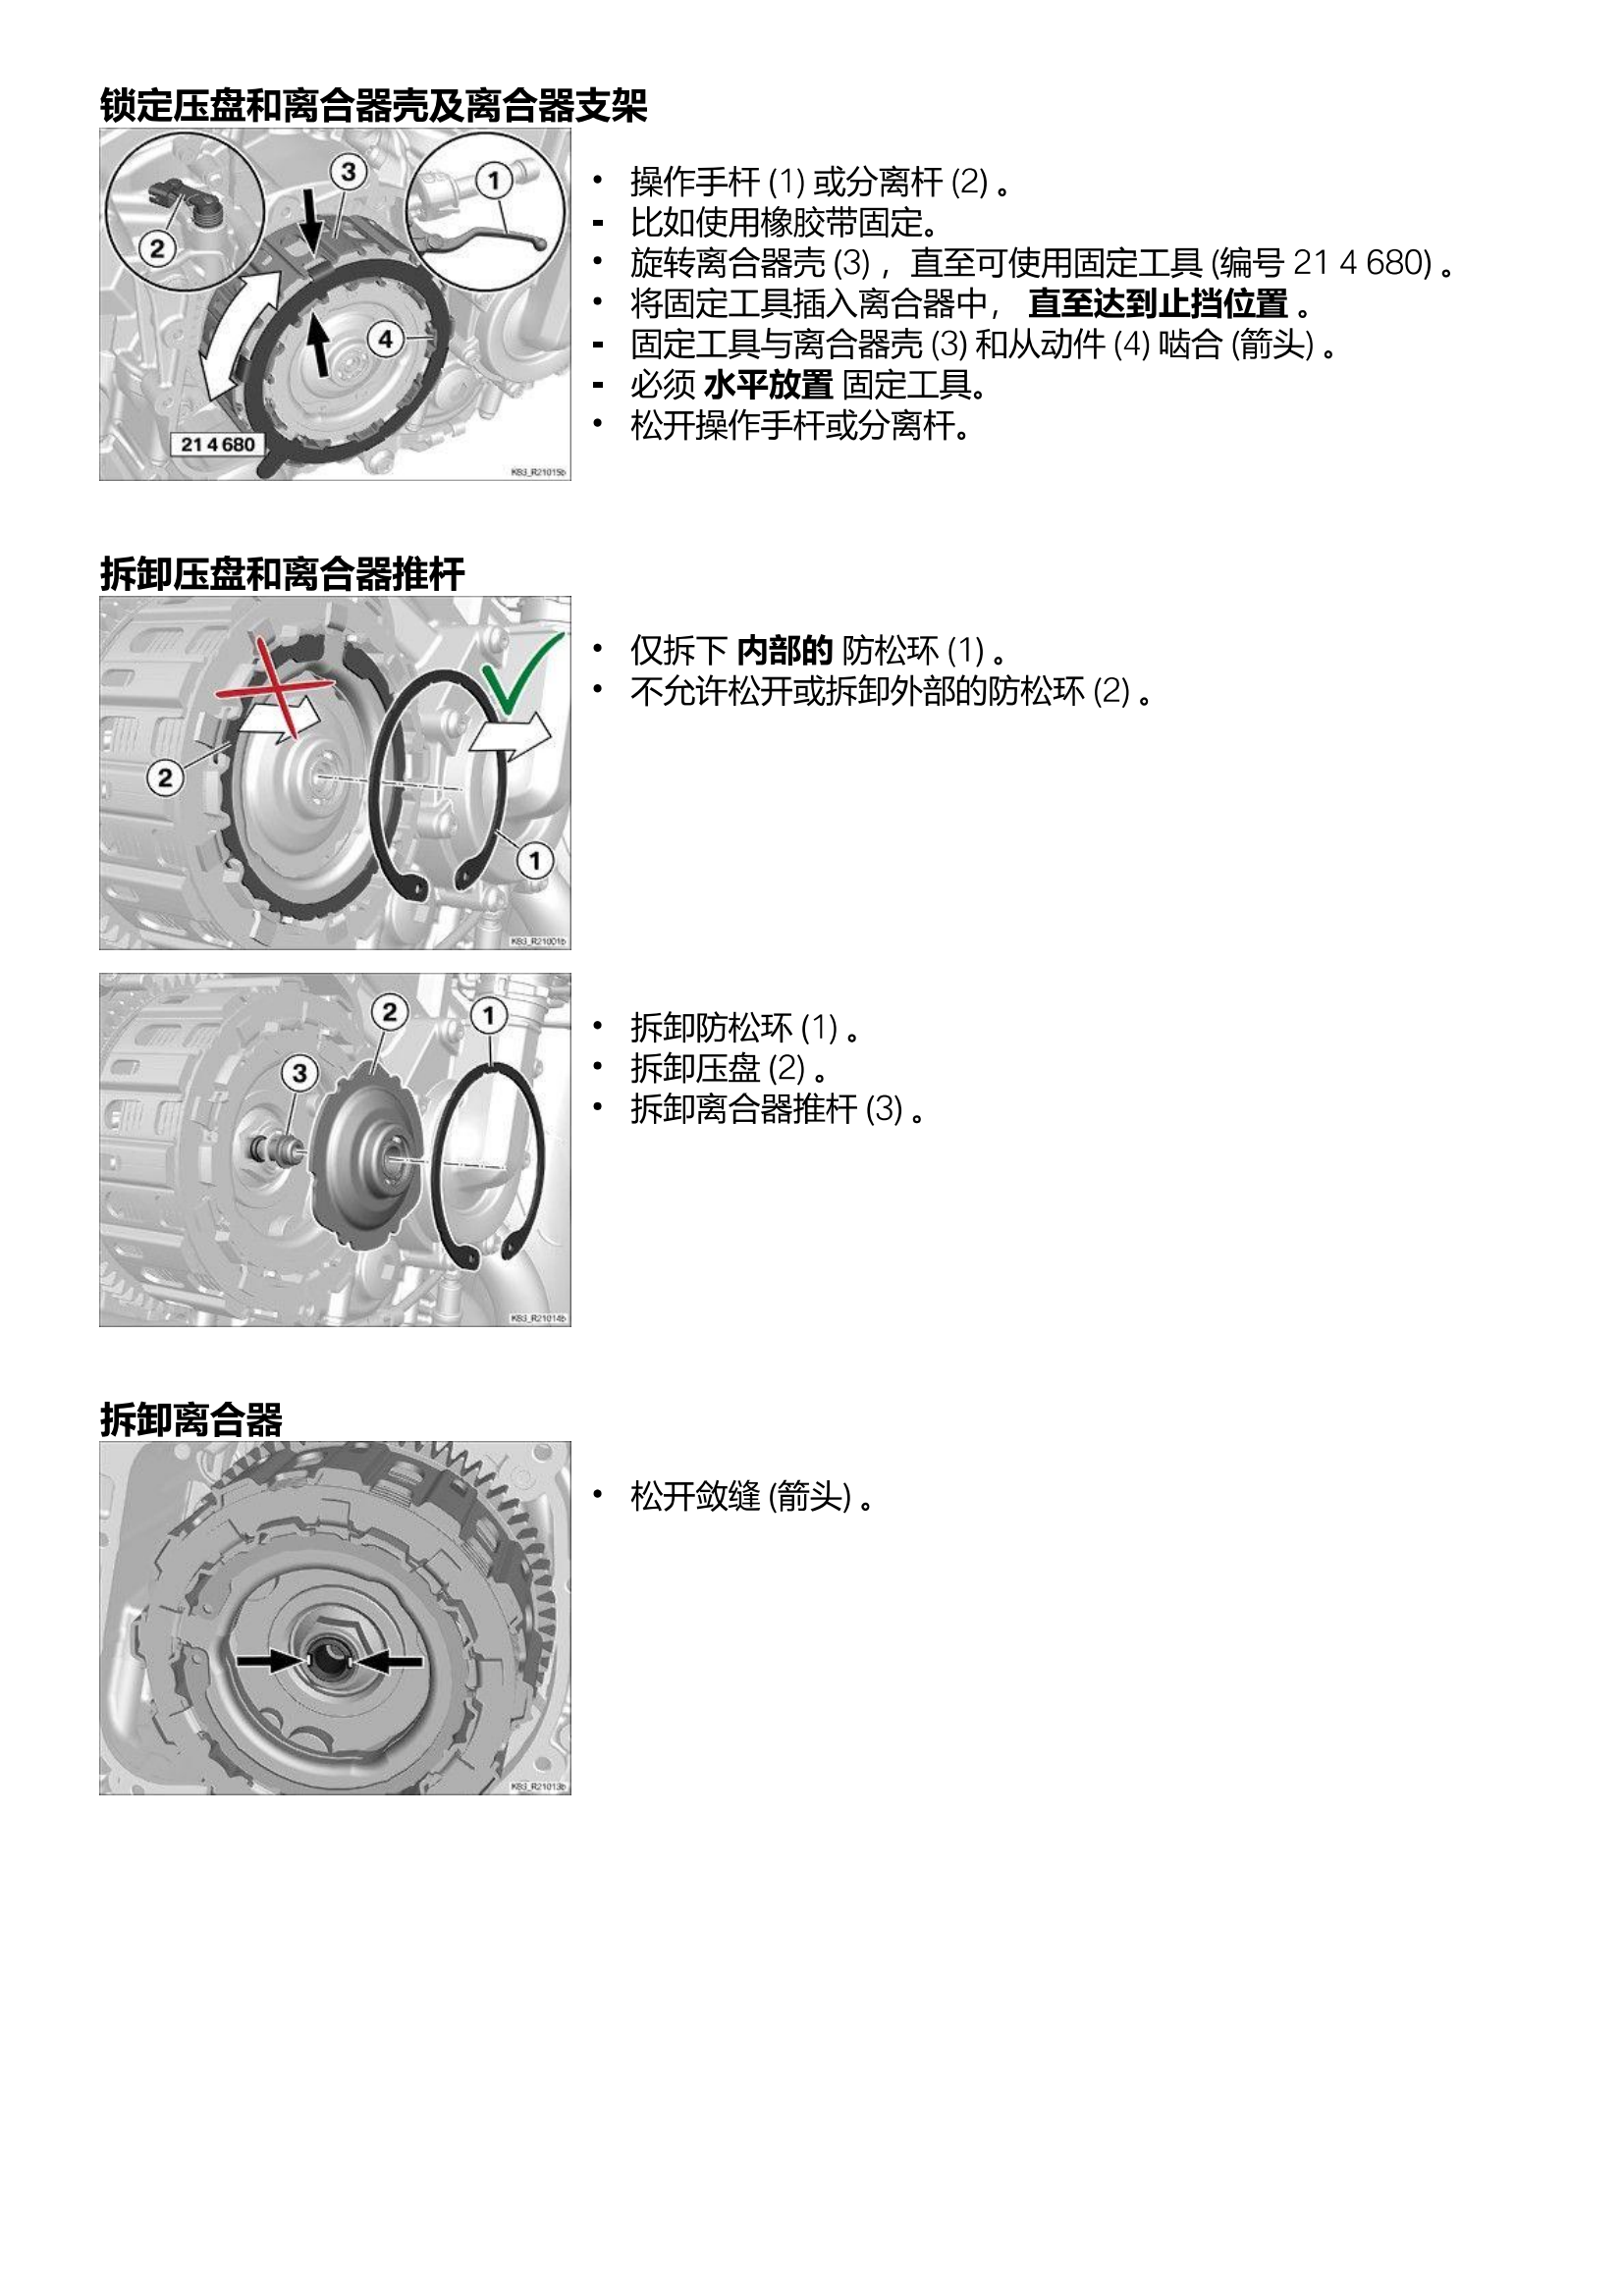 原版中文21-24年宝马f900xr f900r发动机维修手册插图1